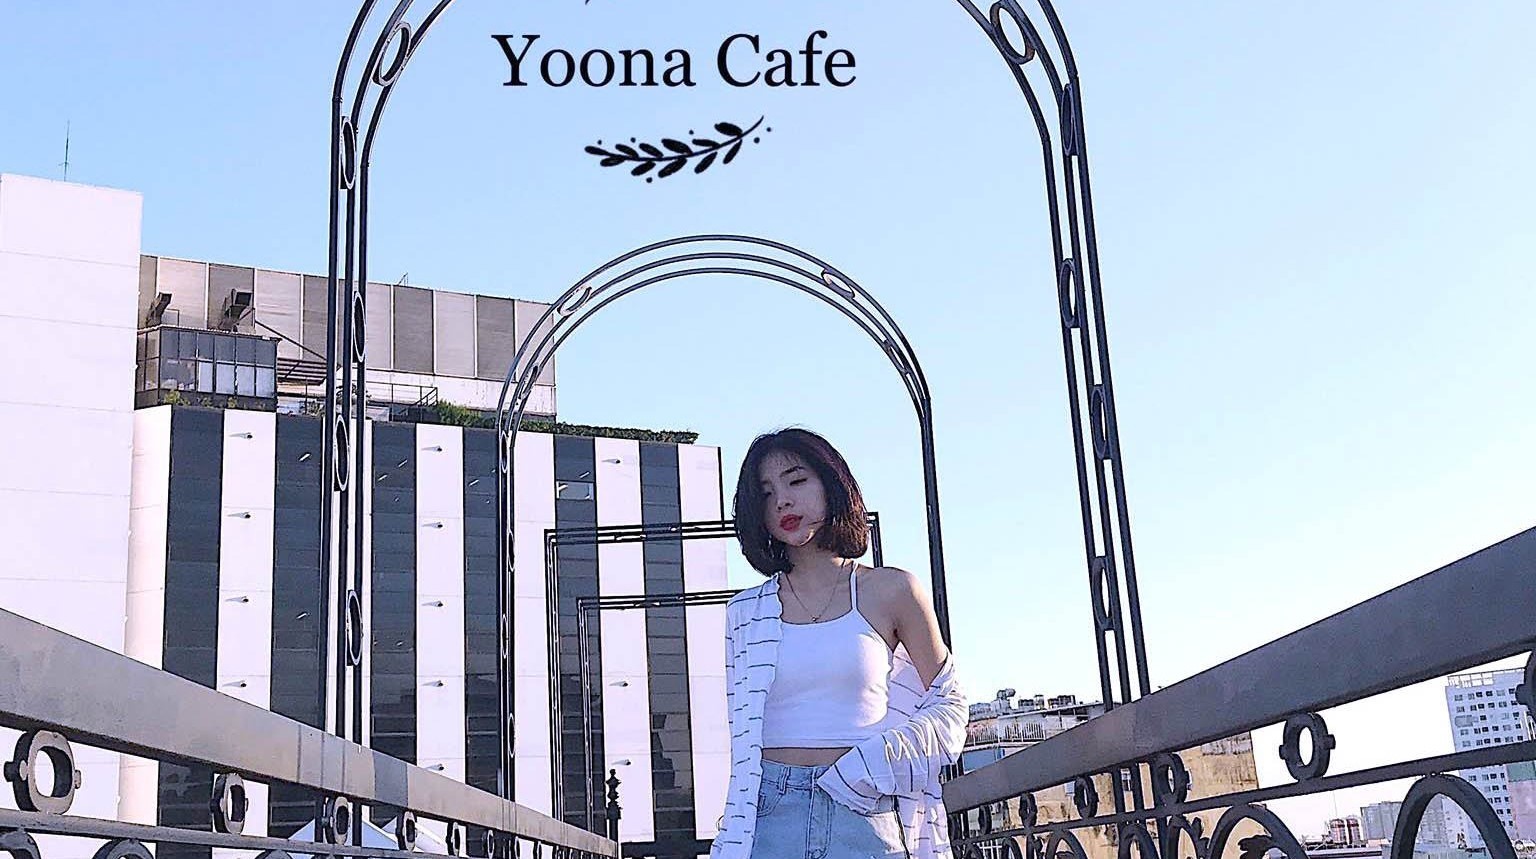 Yoona Cafe